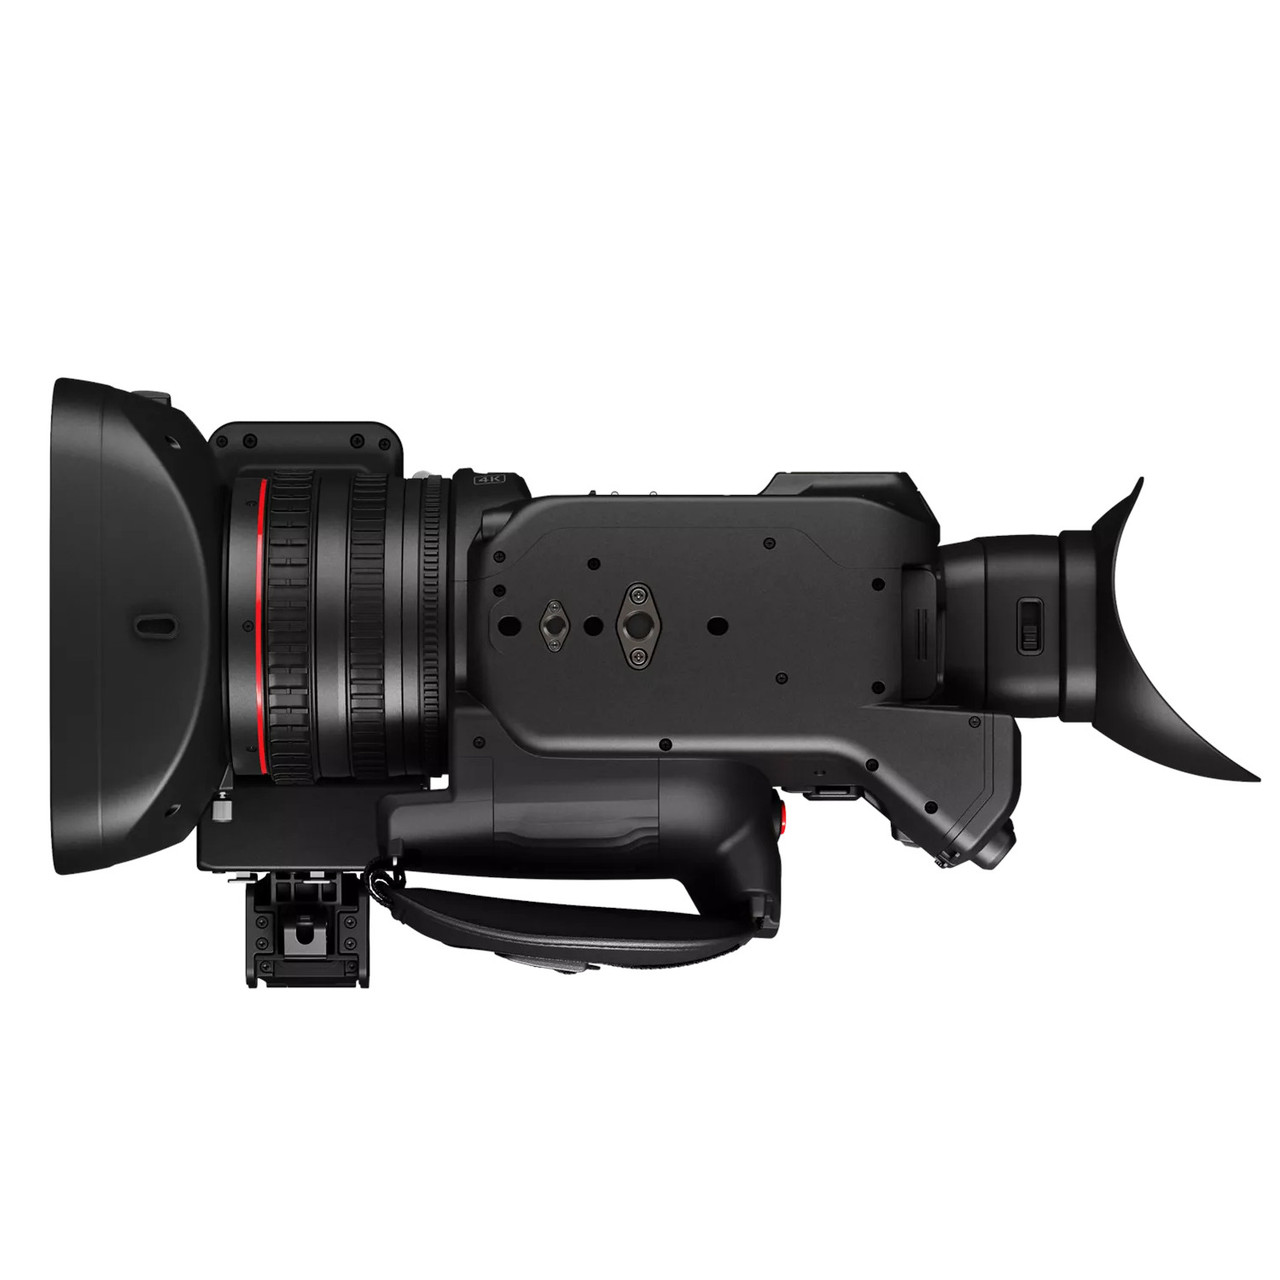 Cámara de video canon XA60 profesional UHD 4K